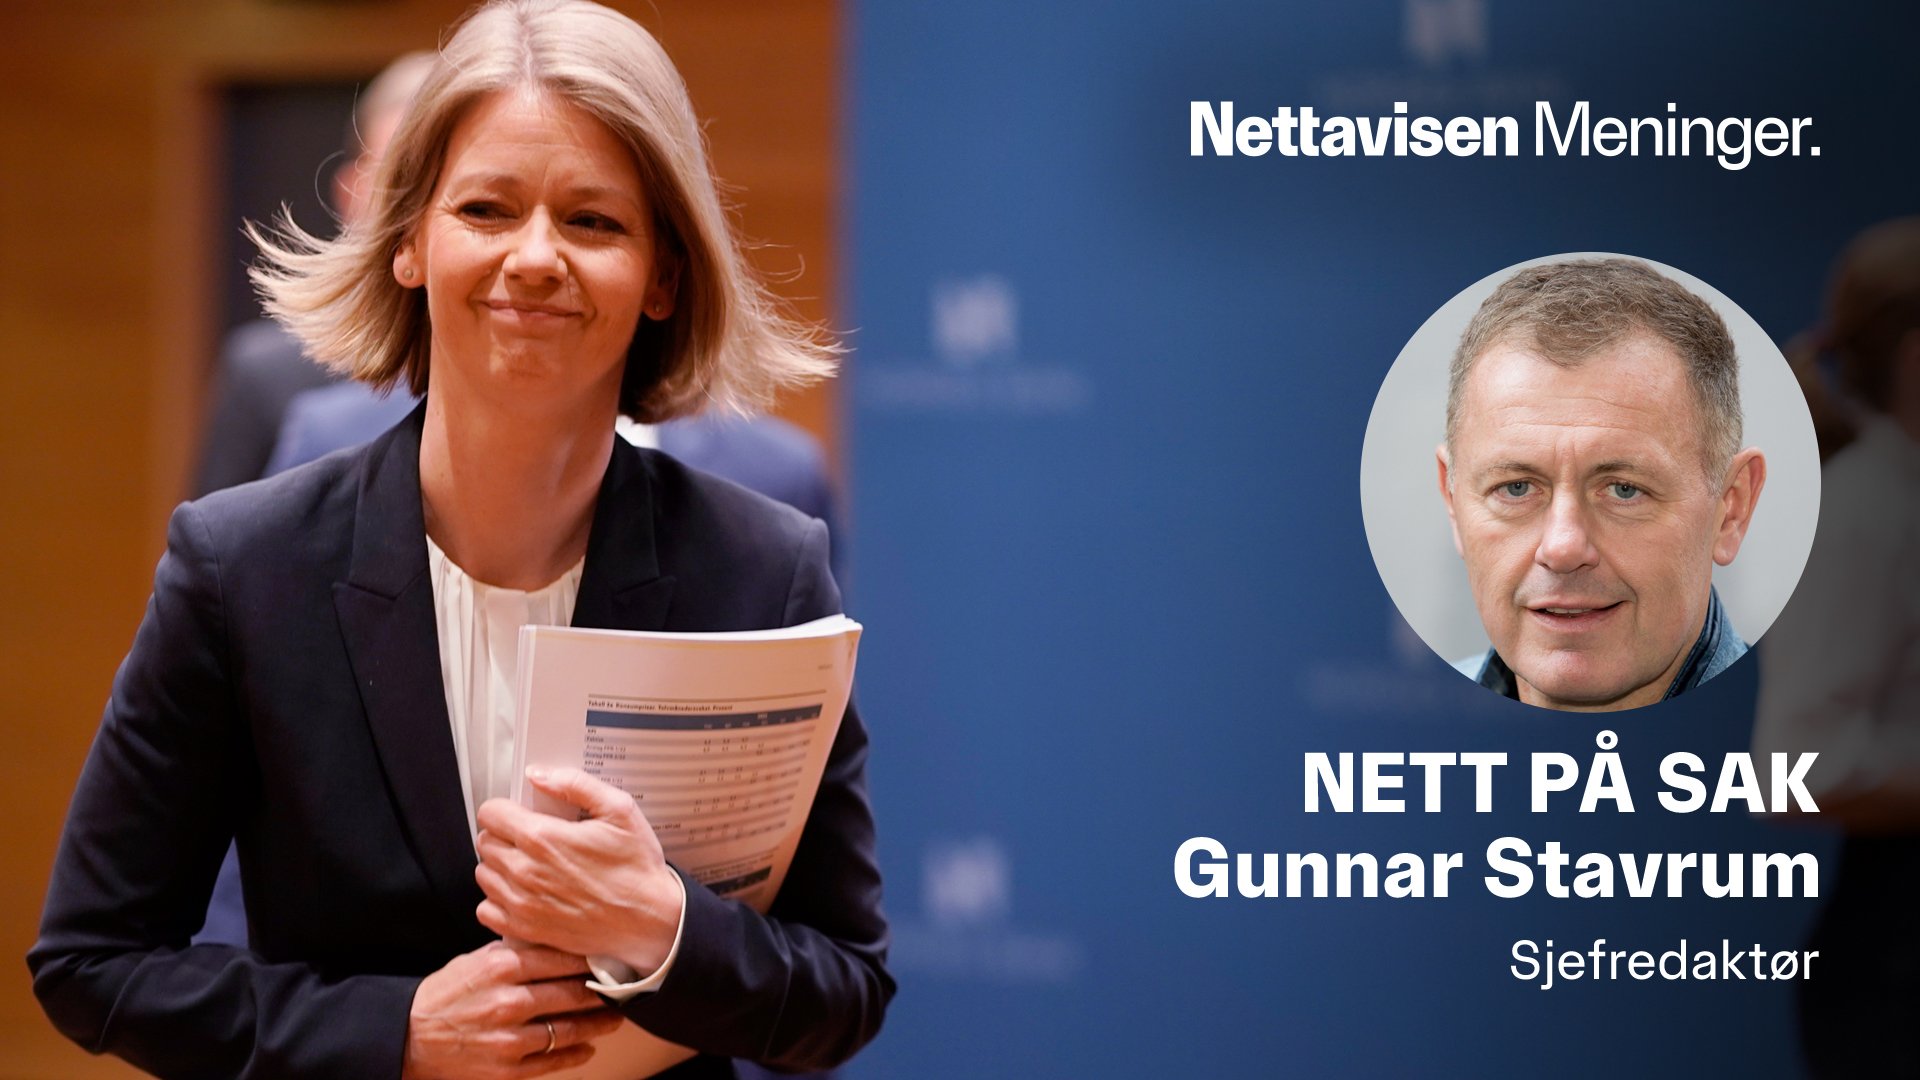 Norwegian politics, the Nett på . case